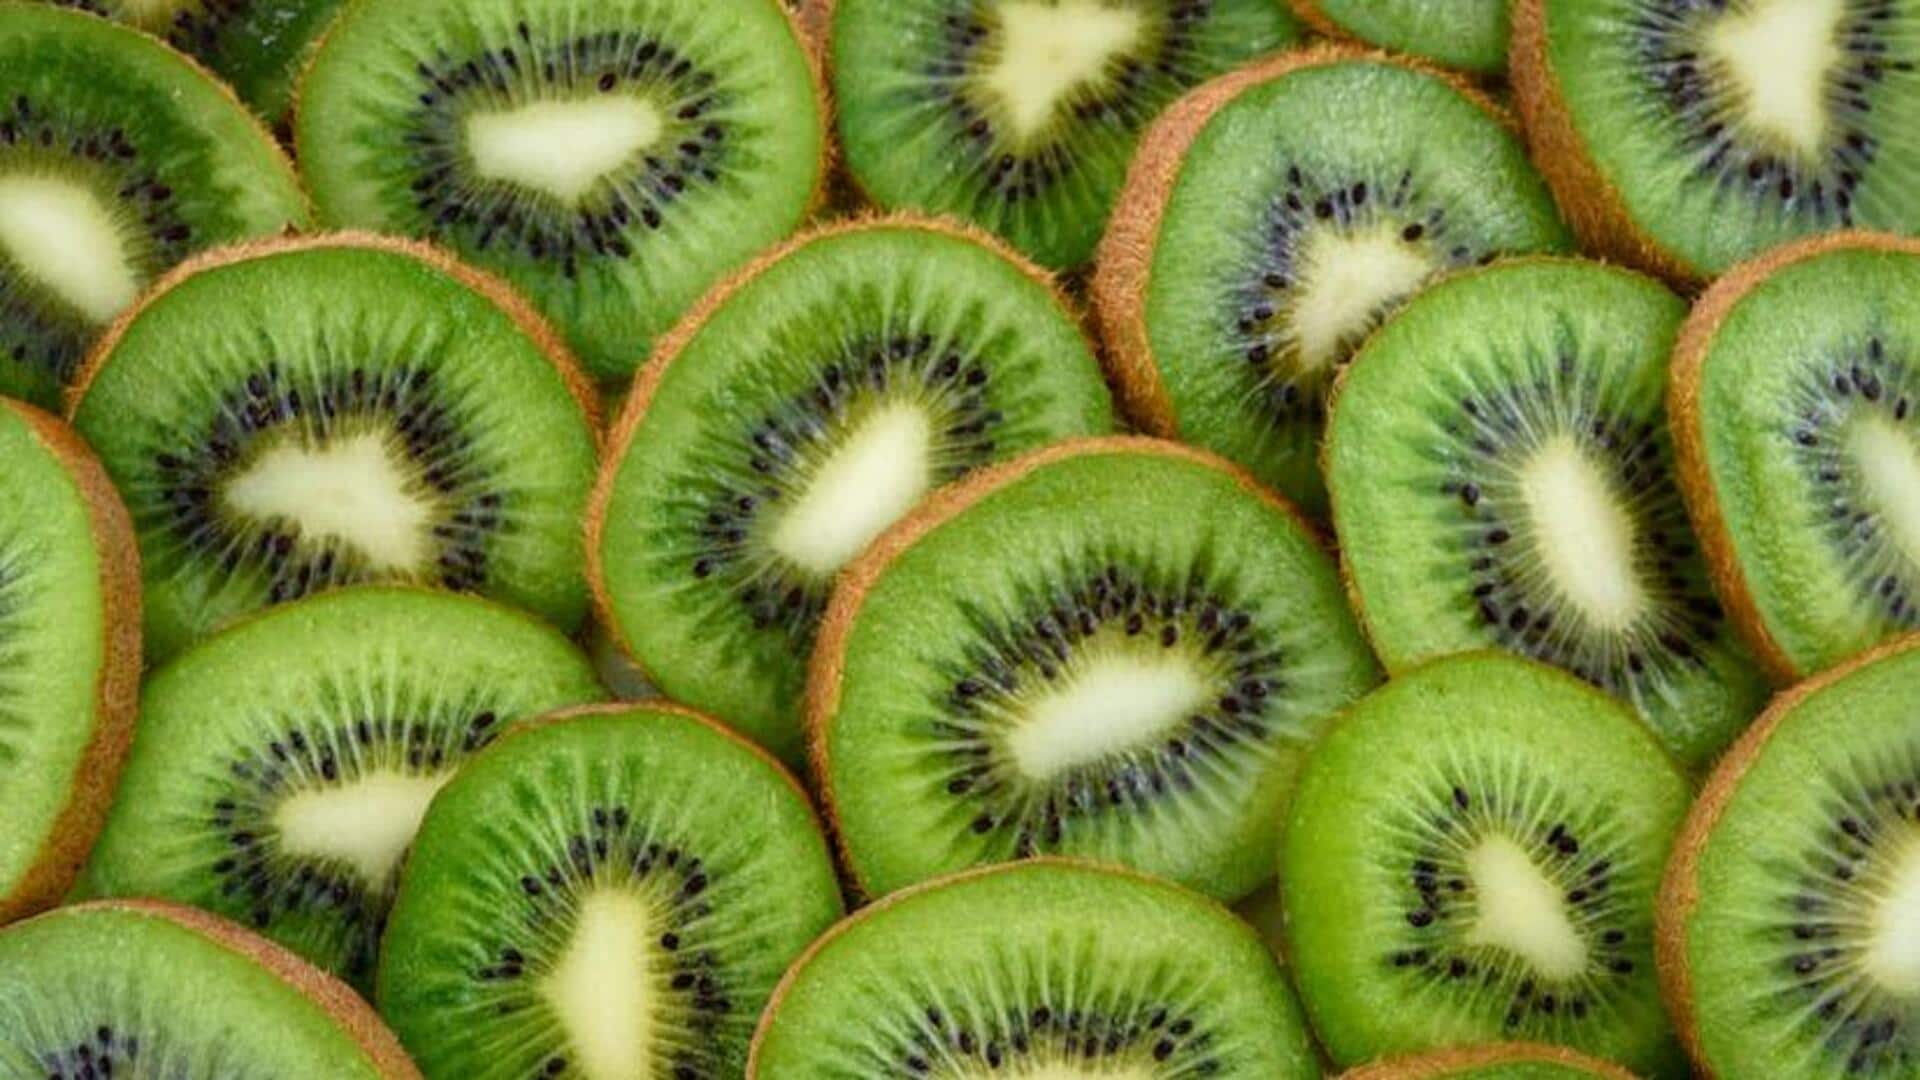 Vegan skin brightening wonders using kiwi fruit